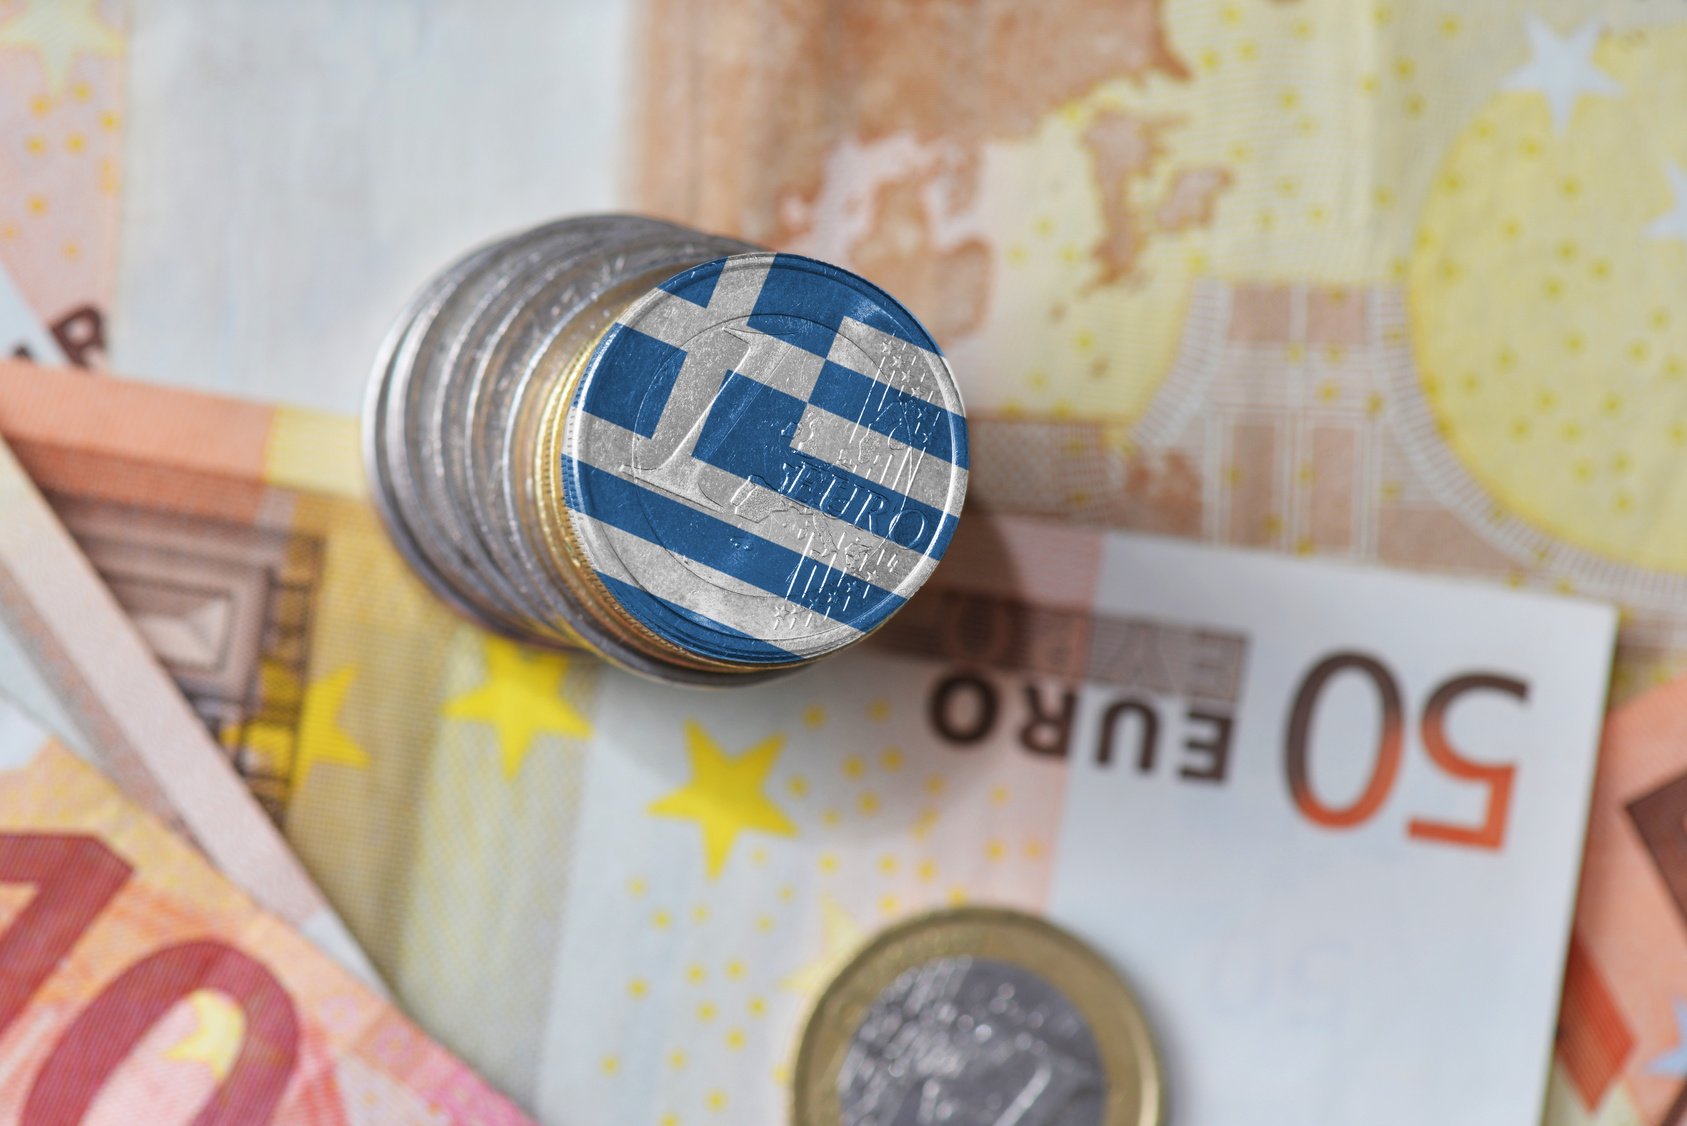 Υπουργείο Οικονομικών: Δήλωση του Υπουργού Οικονομικών κ. Χρήστου Σταϊκούρα σχετικά με τη σημερινή εισήγηση της Ευρωπαϊκής Επιτροπής για πρόσθετη εκταμίευση πόρων, ύψους 2,5 δισ. ευρώ, προς την Ελλάδα από το Πρόγραμμα SURE για τη στήριξη της απασχόλησης